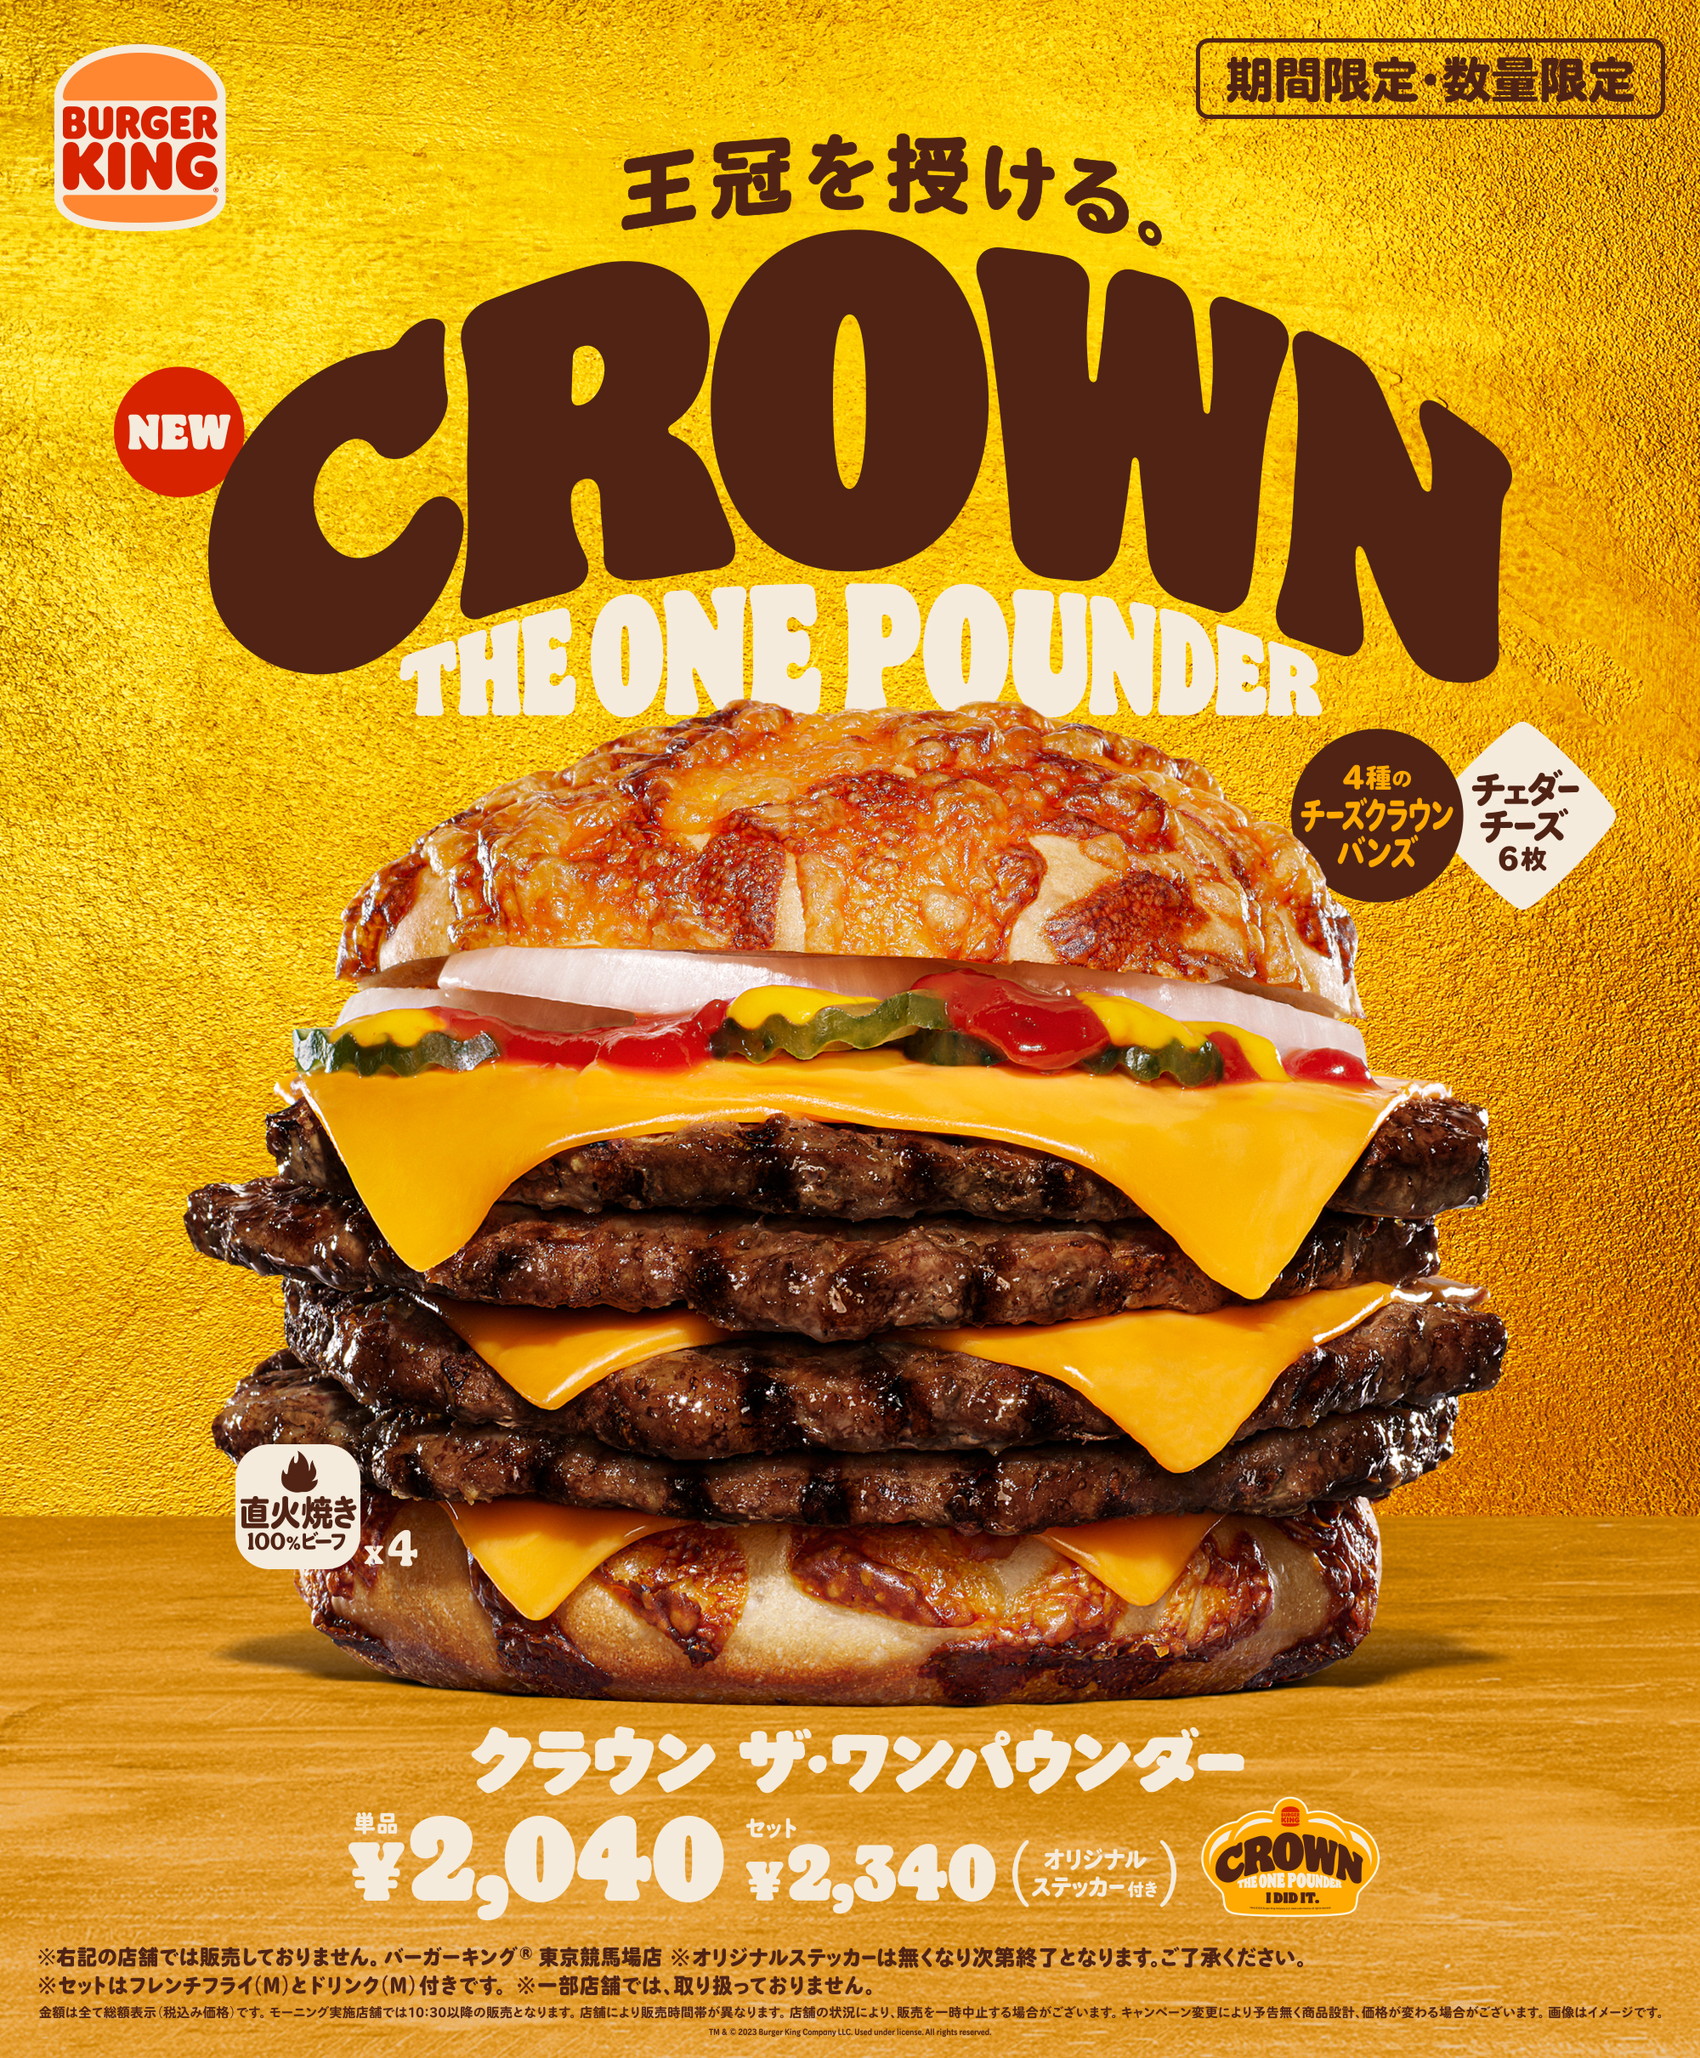 Elkészült a sajtburgerek királya, még az ára is baráti